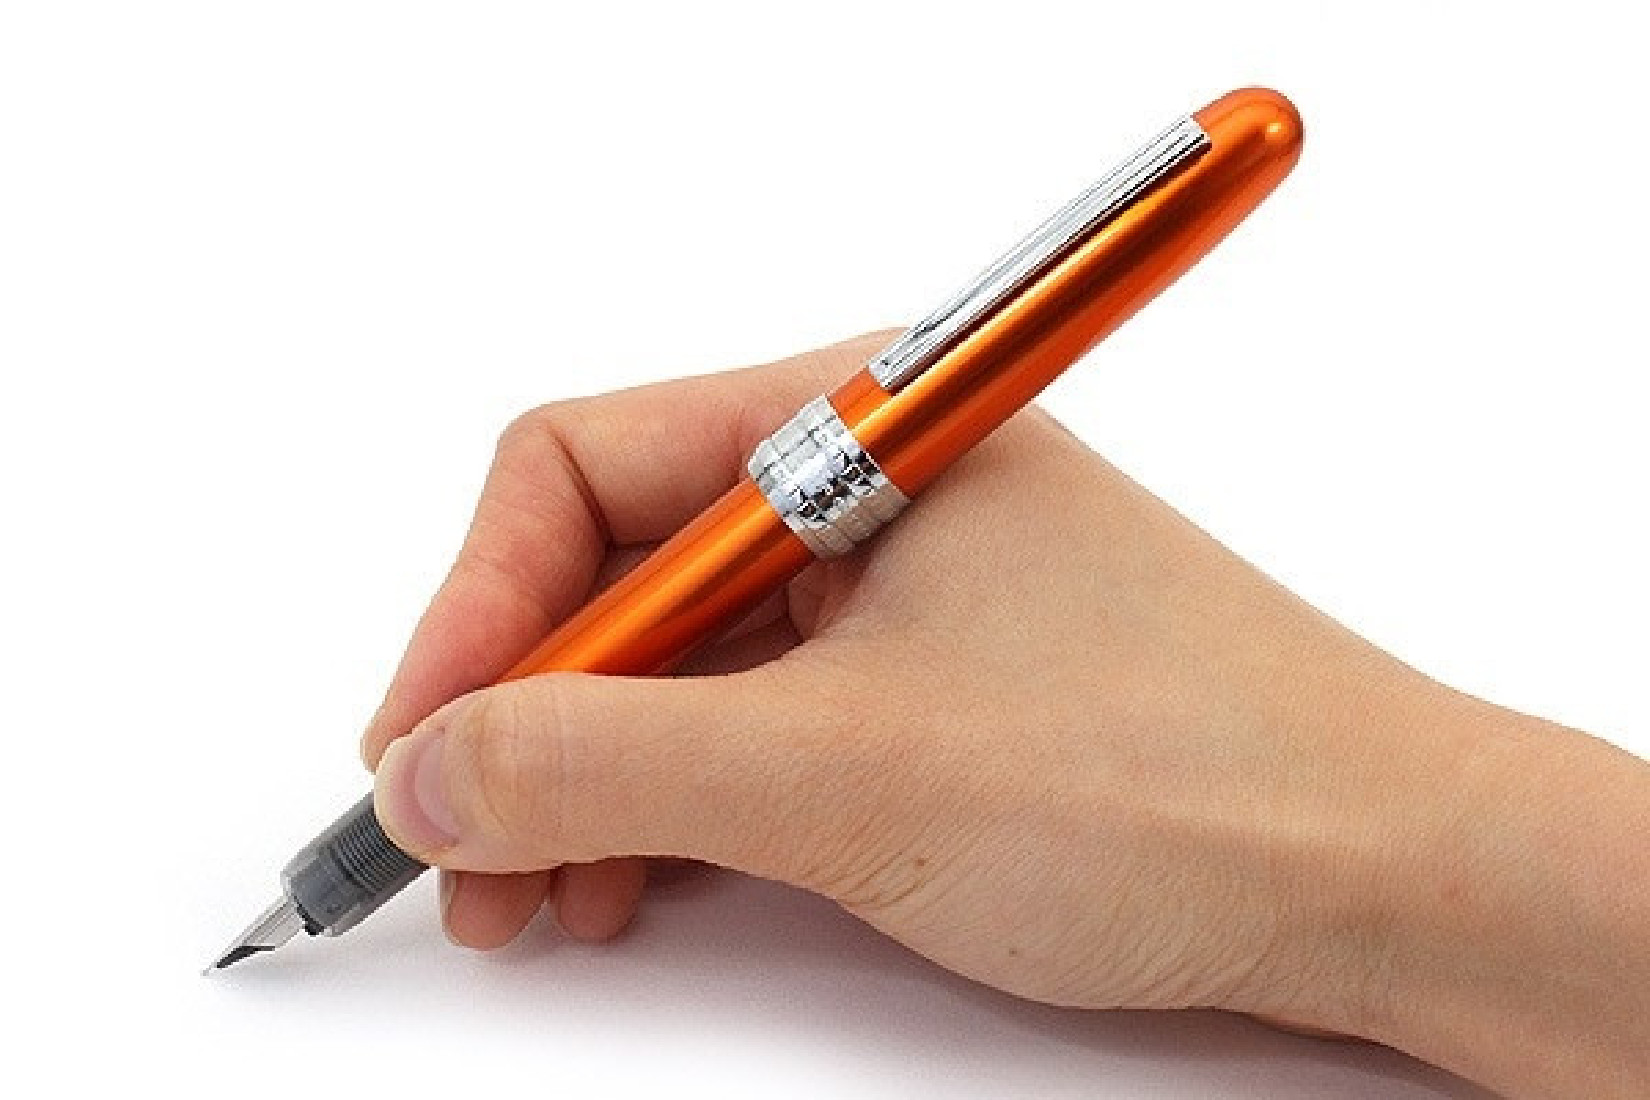 Platinum Plaisir Orange Fountain Pen  PGB-1000